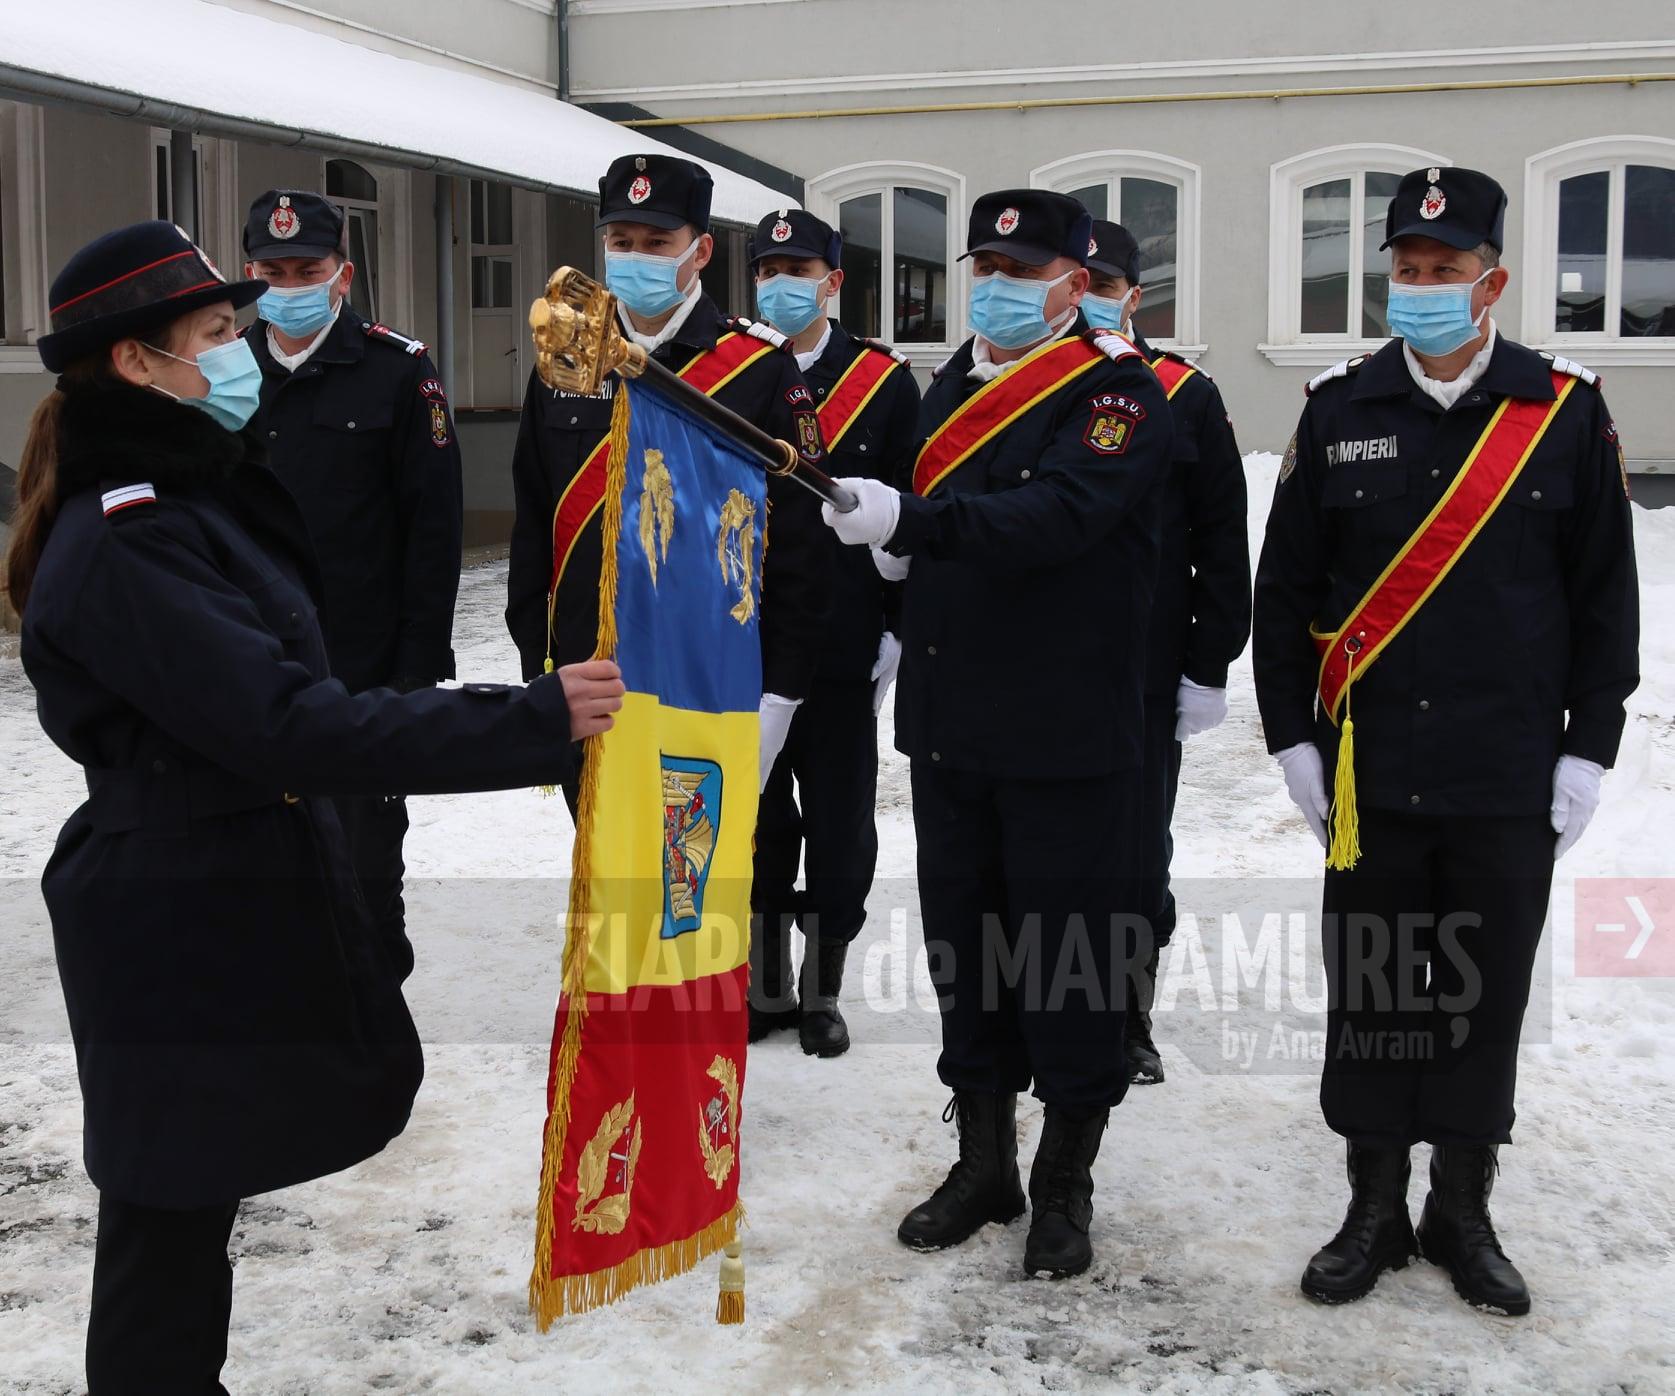 Șapte noi subofițeri la ISU Maramureș. Aceștia au depus astăzi jurământul militar